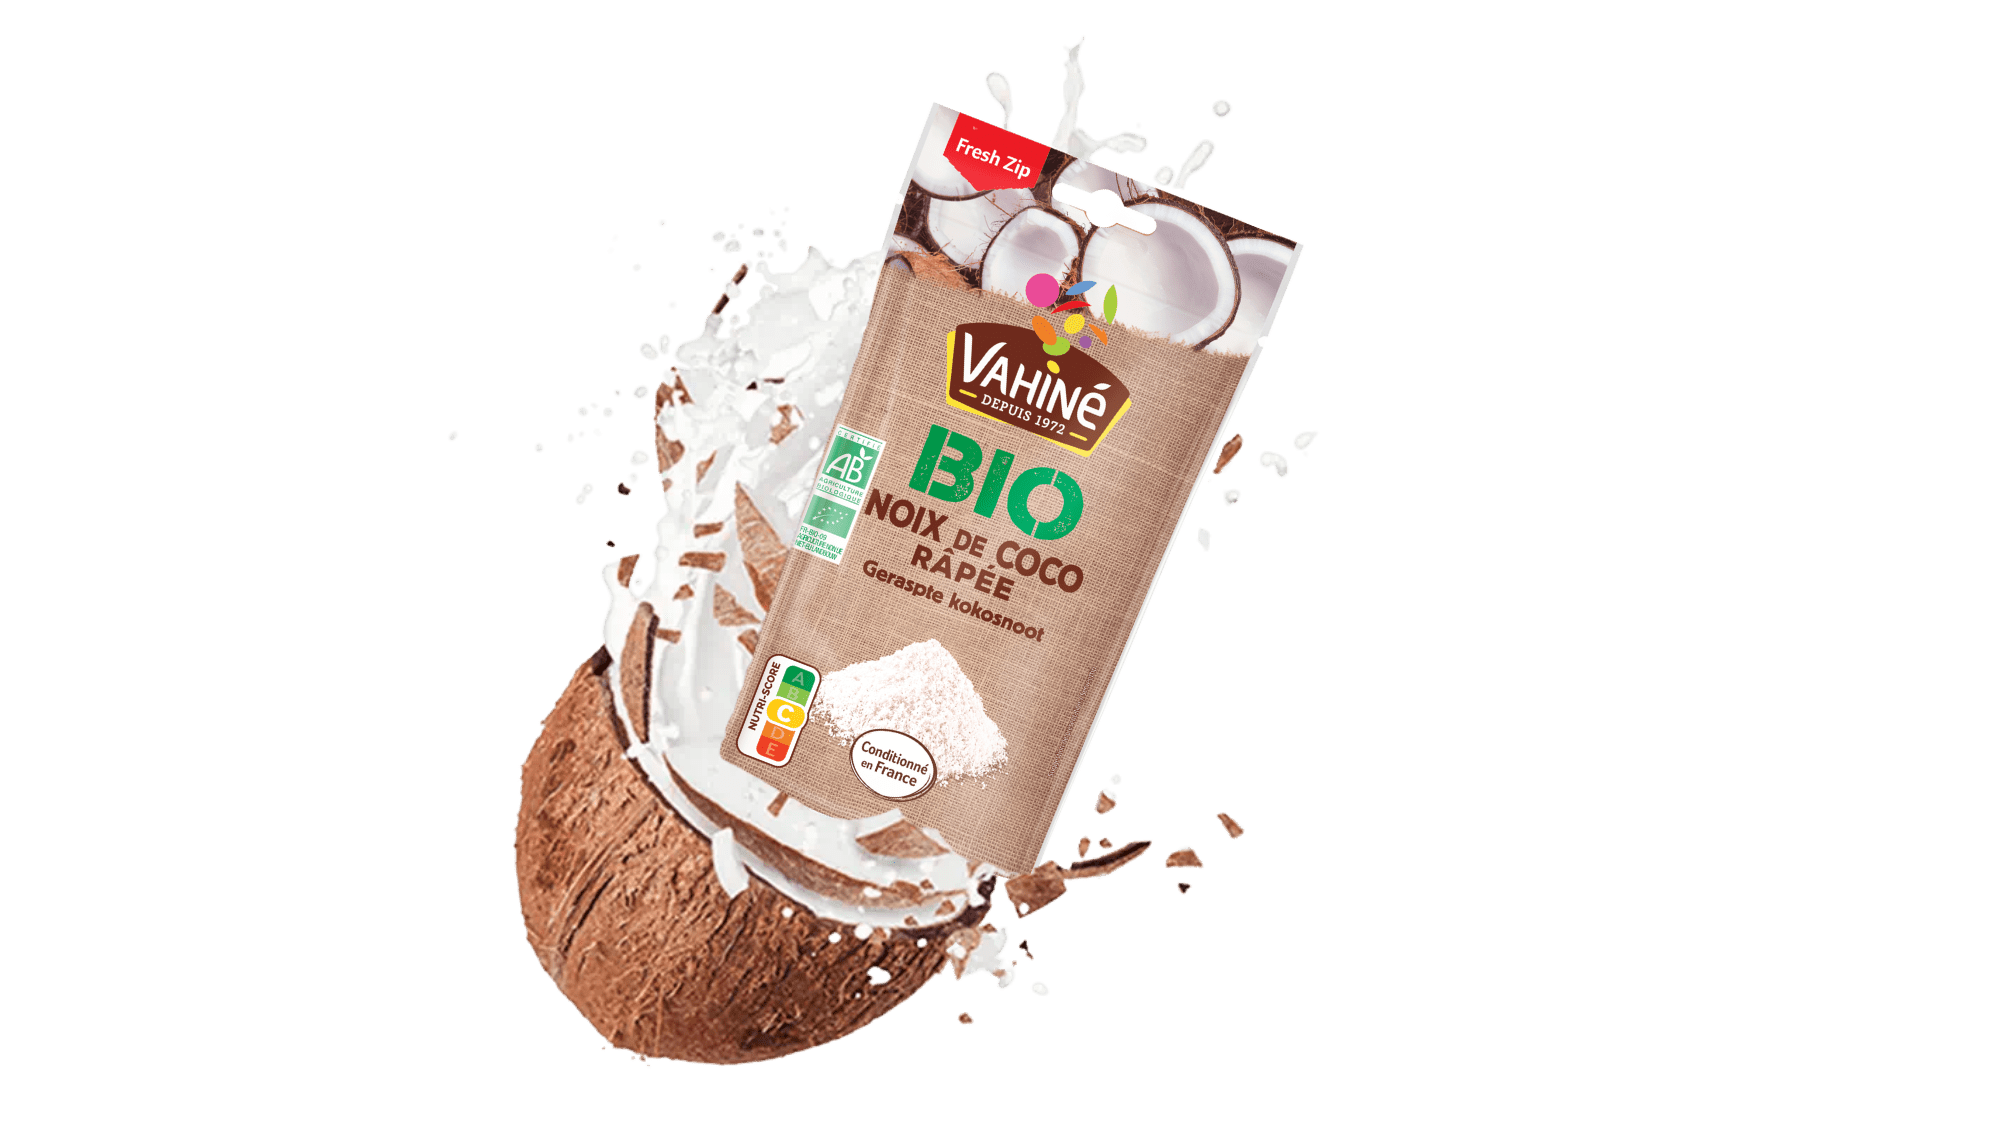 Noix de coco râpée biologique – Prana Foods